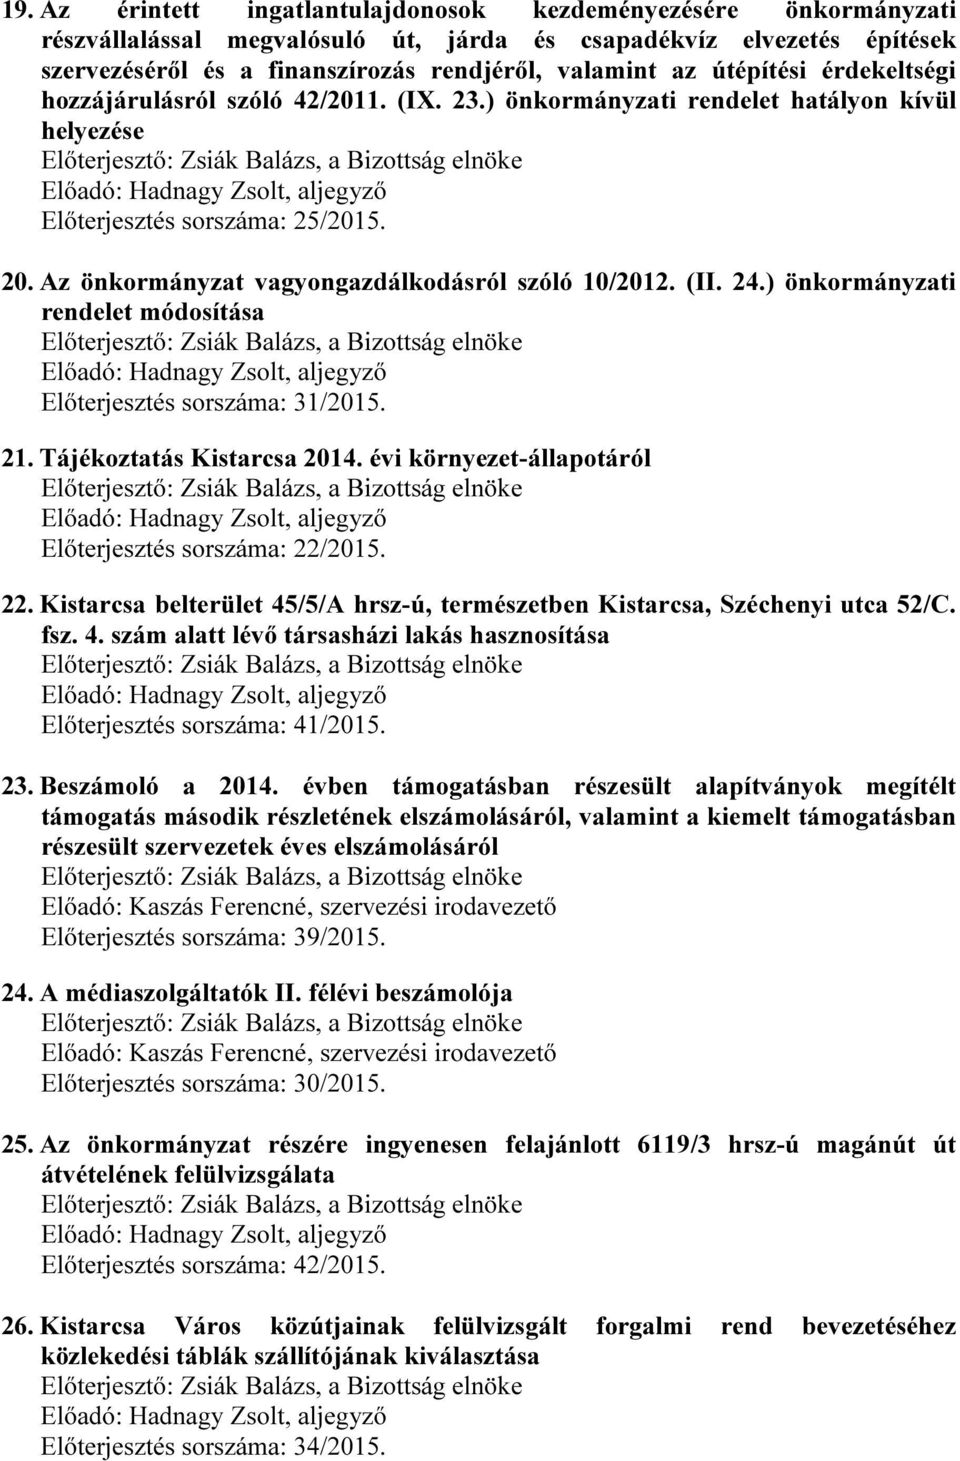 (II. 24.) önkormányzati rendelet módosítása Előterjesztés sorszáma: 31/2015. 21. Tájékoztatás Kistarcsa 2014. évi környezet-állapotáról Előterjesztés sorszáma: 22/